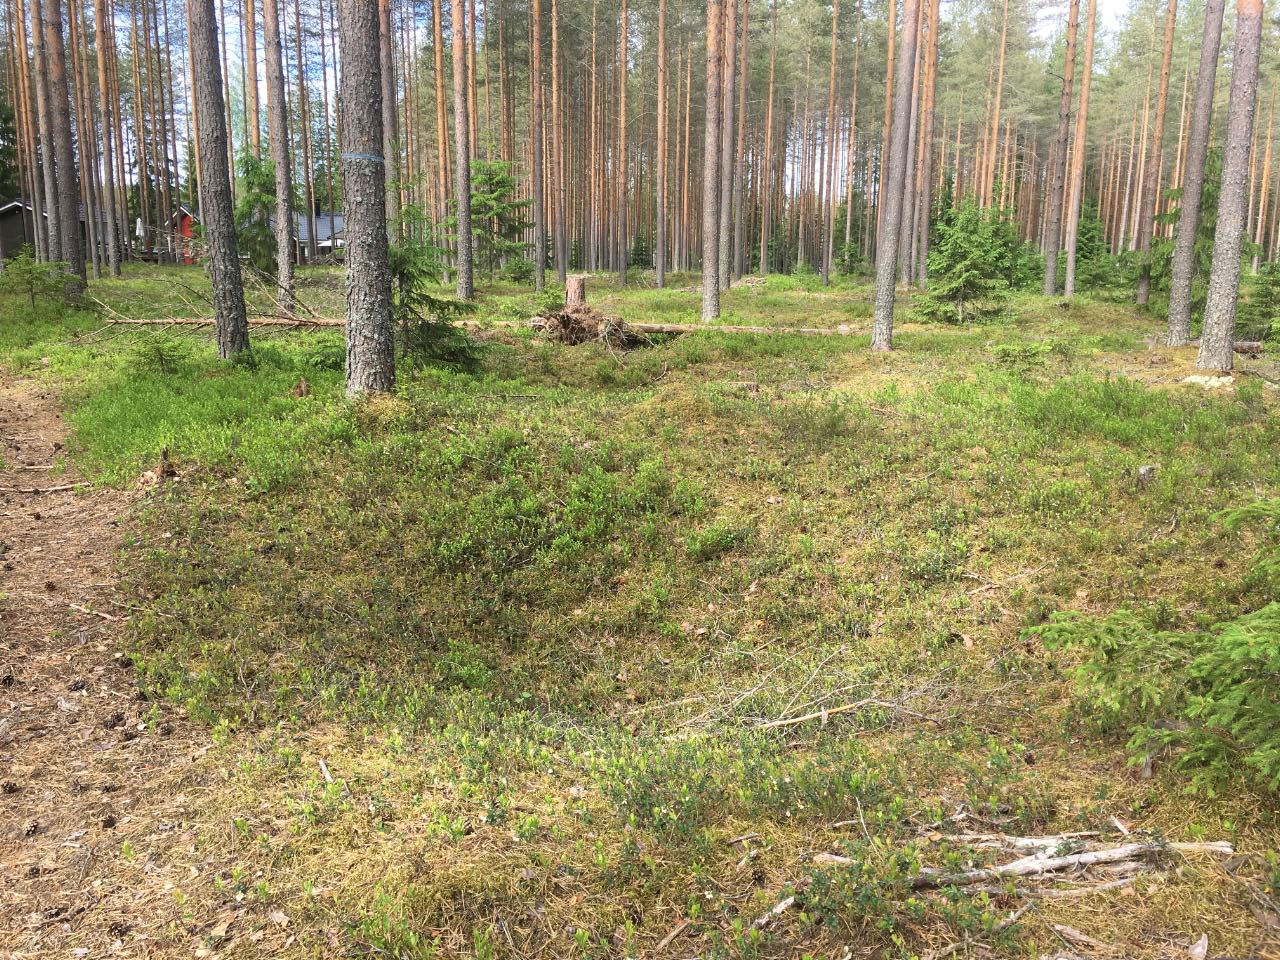 Kuva: Pyyntikuoppa numero kolme erottuu vielä kauniisti maastossa. Sen itäreunan päältä kulkee metsäautotie. Kuopion kulttuurihistoriallinen museo. CC BY 4.0 Tytti Räikkönen 11.6.2019